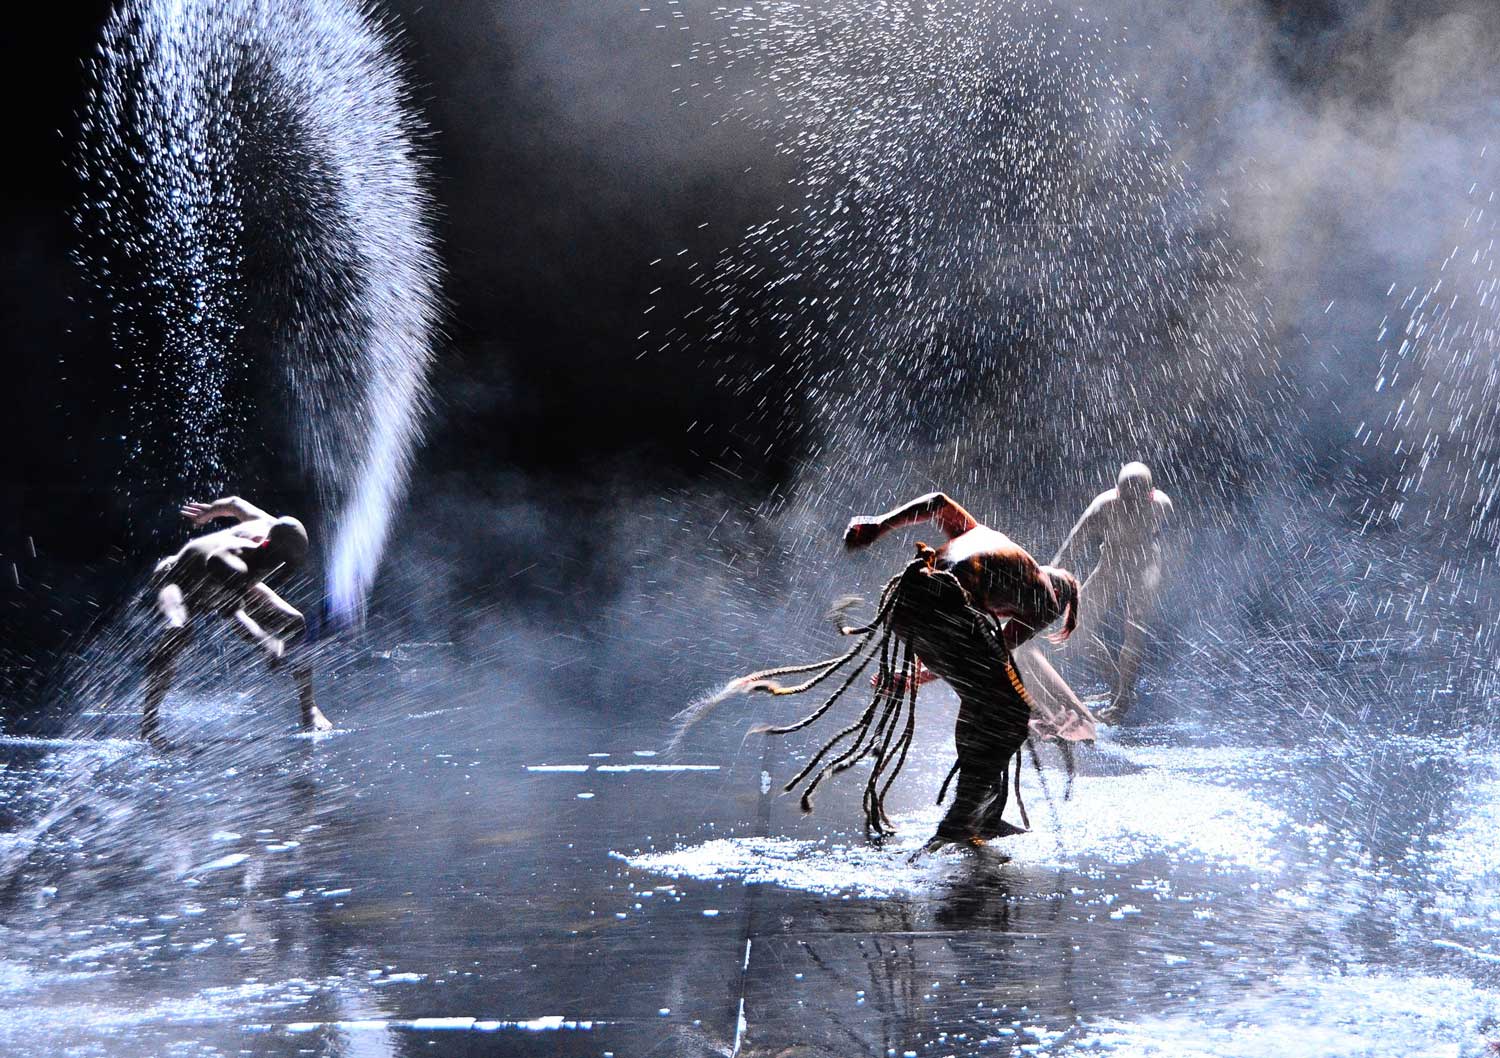 Foto, farbig, innen: Drei Personen stehen auf dem knöcheltief mit Wasser gefüllten Boden und schlagen mit wilden Bewegungen Wasserfontänen heraus.